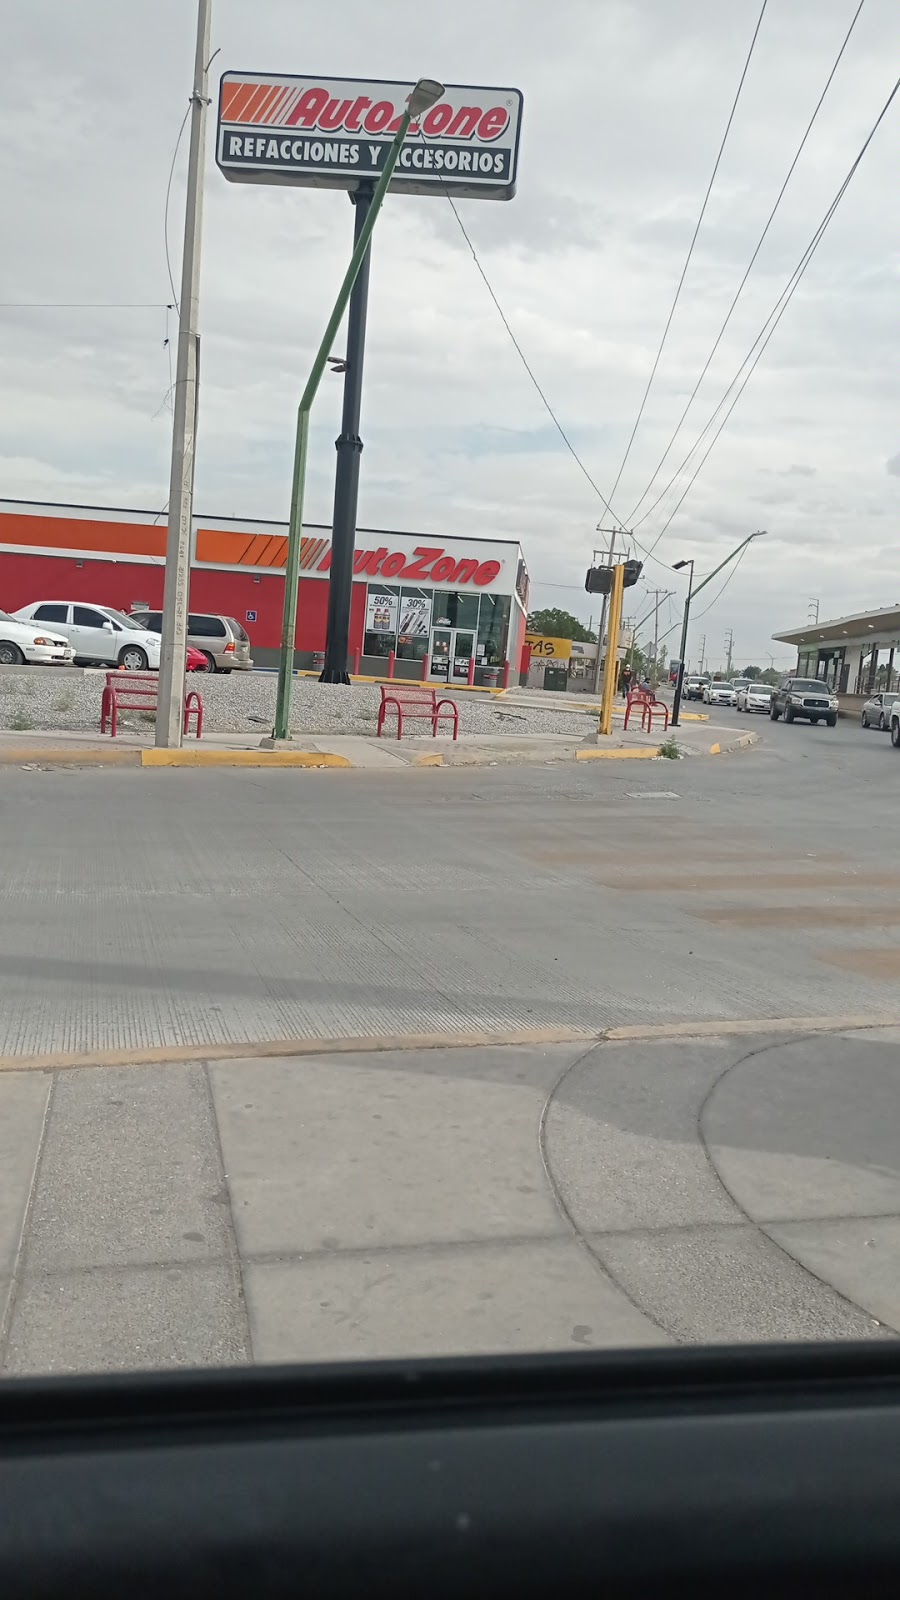 AutoZone Refacciones | Eje Vial Juan Gabriel 5446, Col. Jarudo del Norte, 32562 Cd Juárez, Chih., Mexico | Phone: 656 654 8387